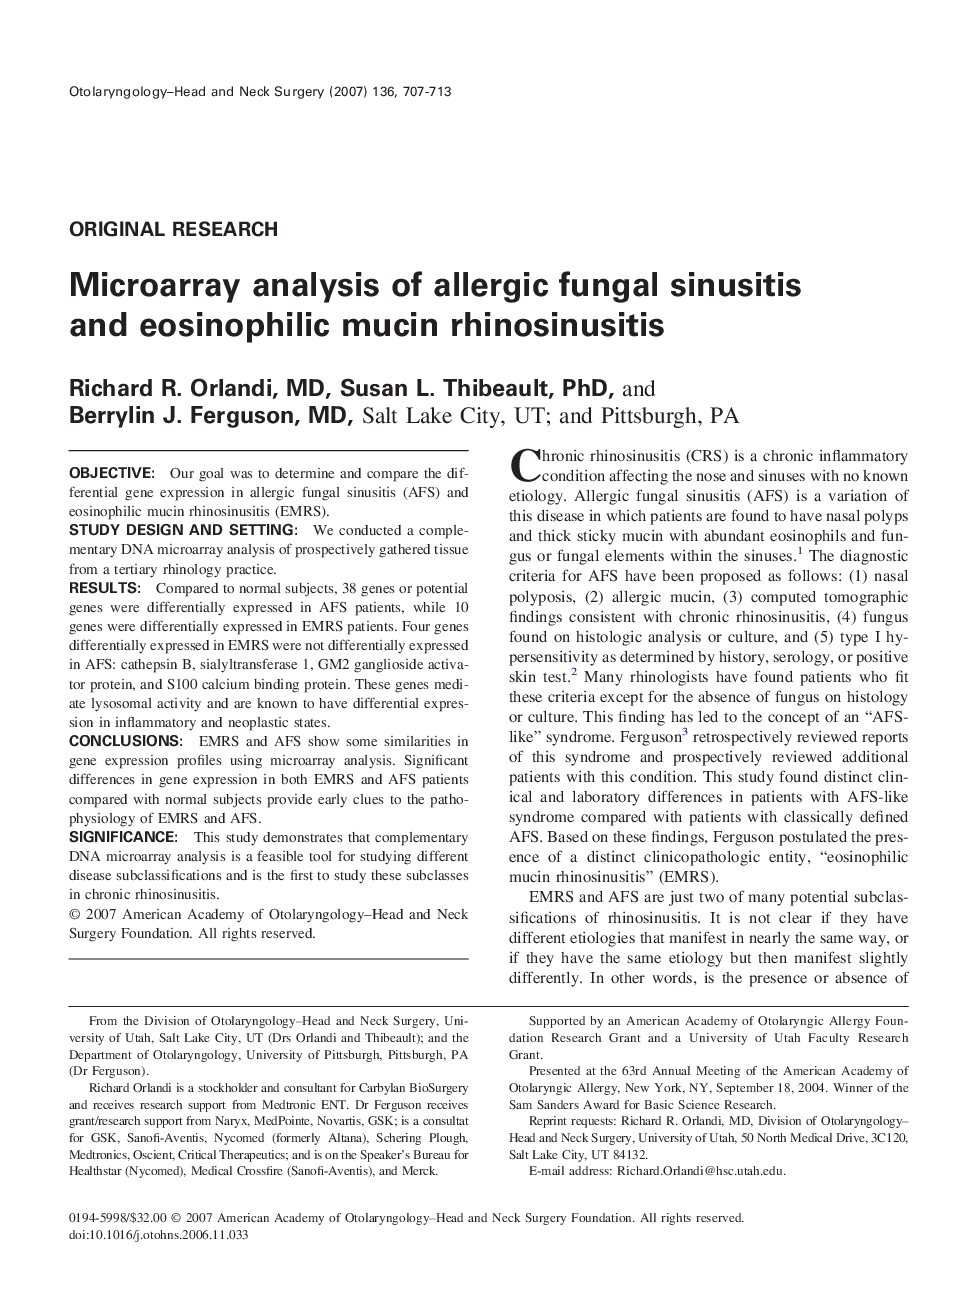 Microarray analysis of allergic fungal sinusitis and eosinophilic mucin rhinosinusitis